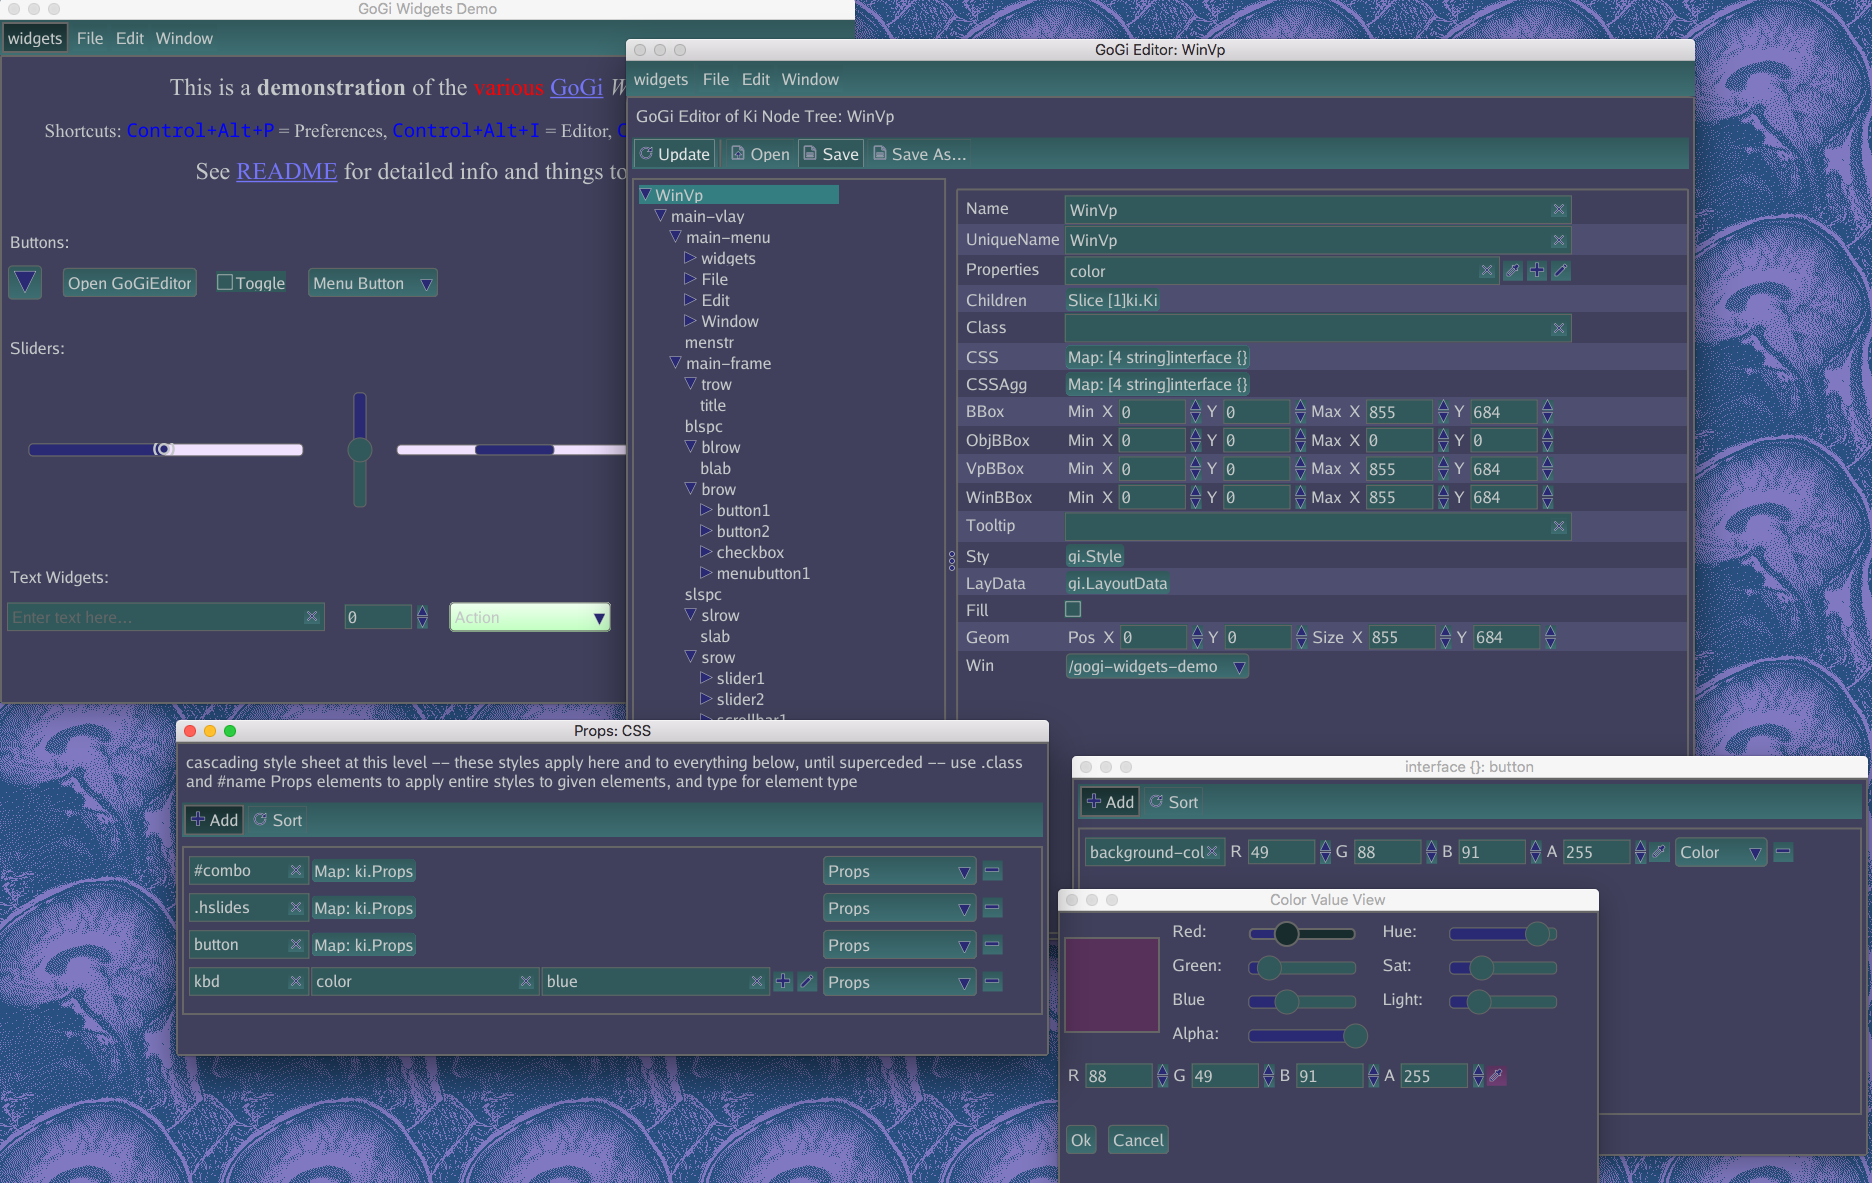 Screenshot of Widgets demo, Darker